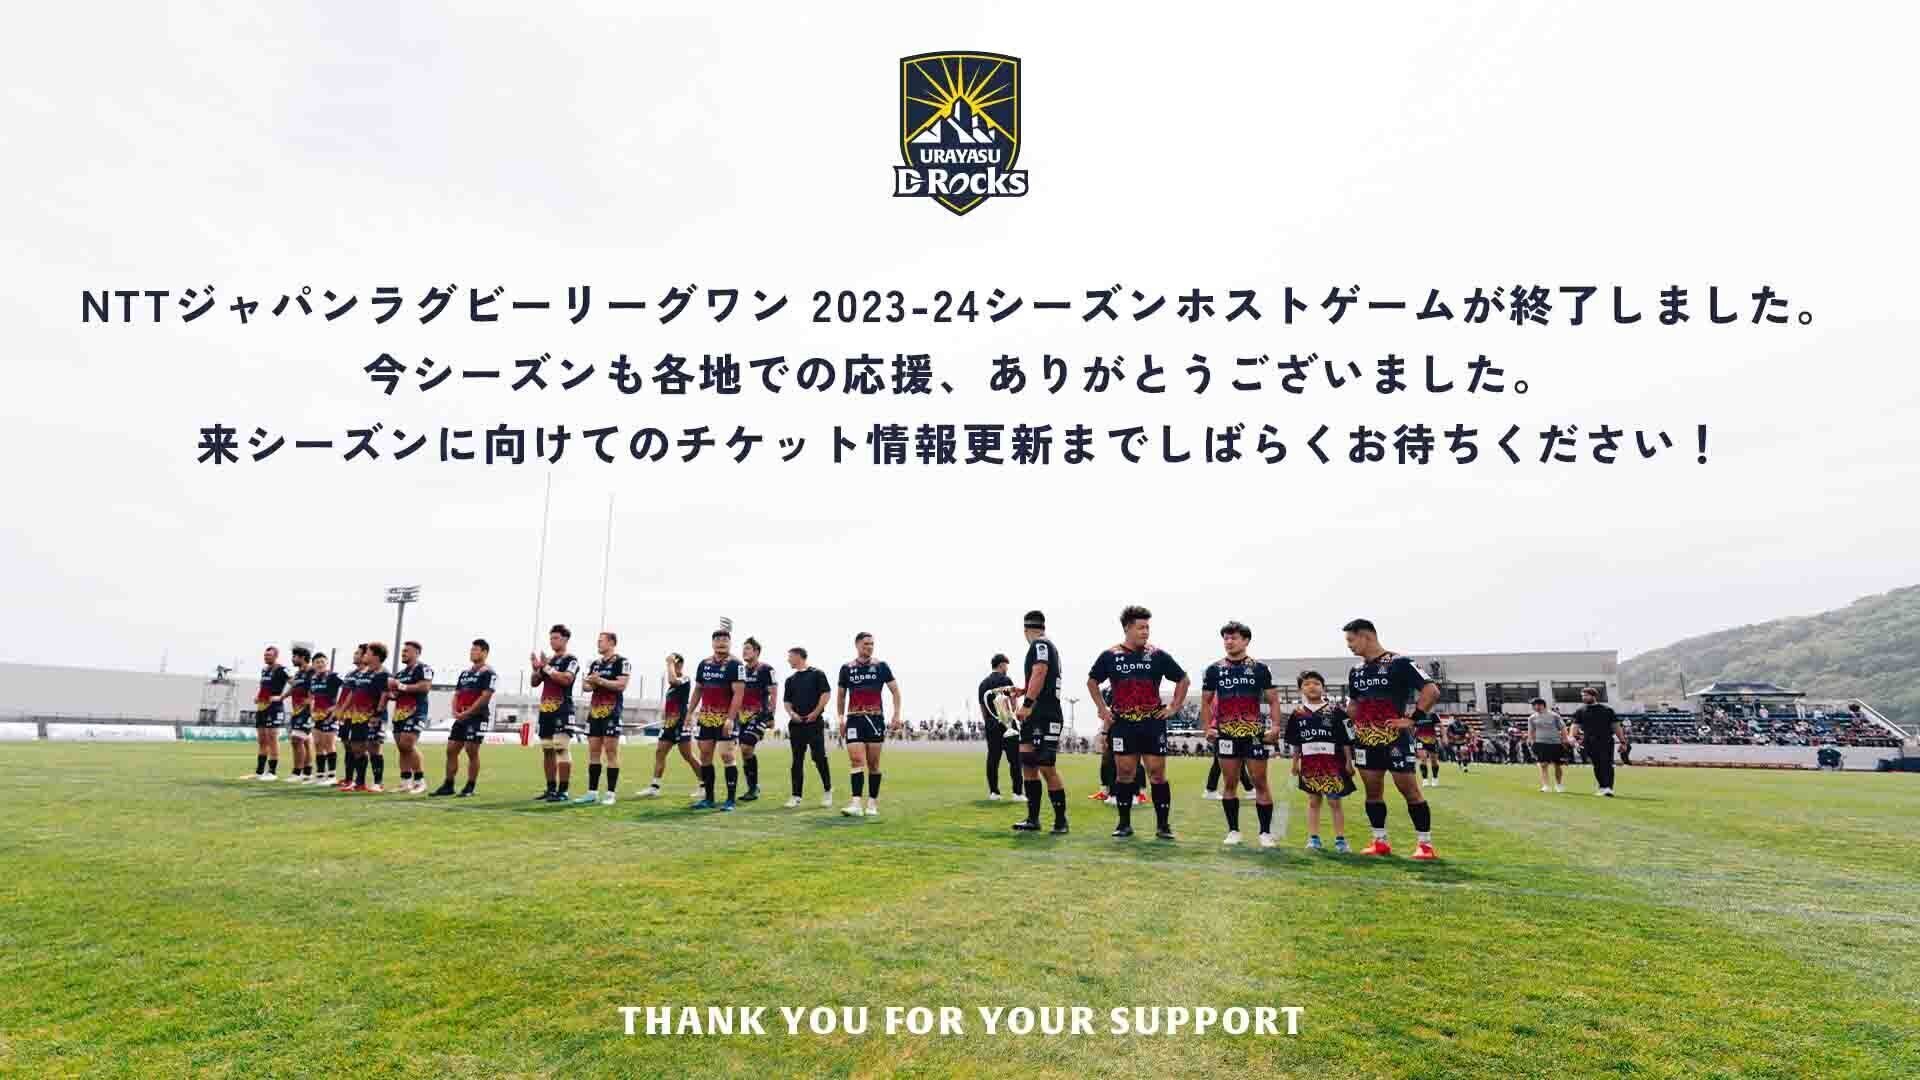 URAYASU D-Rocks NTTジャパンラグビーリーグワン 2023-24シーズンホストゲームが終了しました。 今シーズンも各地での応援、ありがとうございました。 来シーズンに向けてのチケット情報更新までしばらくお待ちください！ THANK YOU FOR YOUR SUPPORT